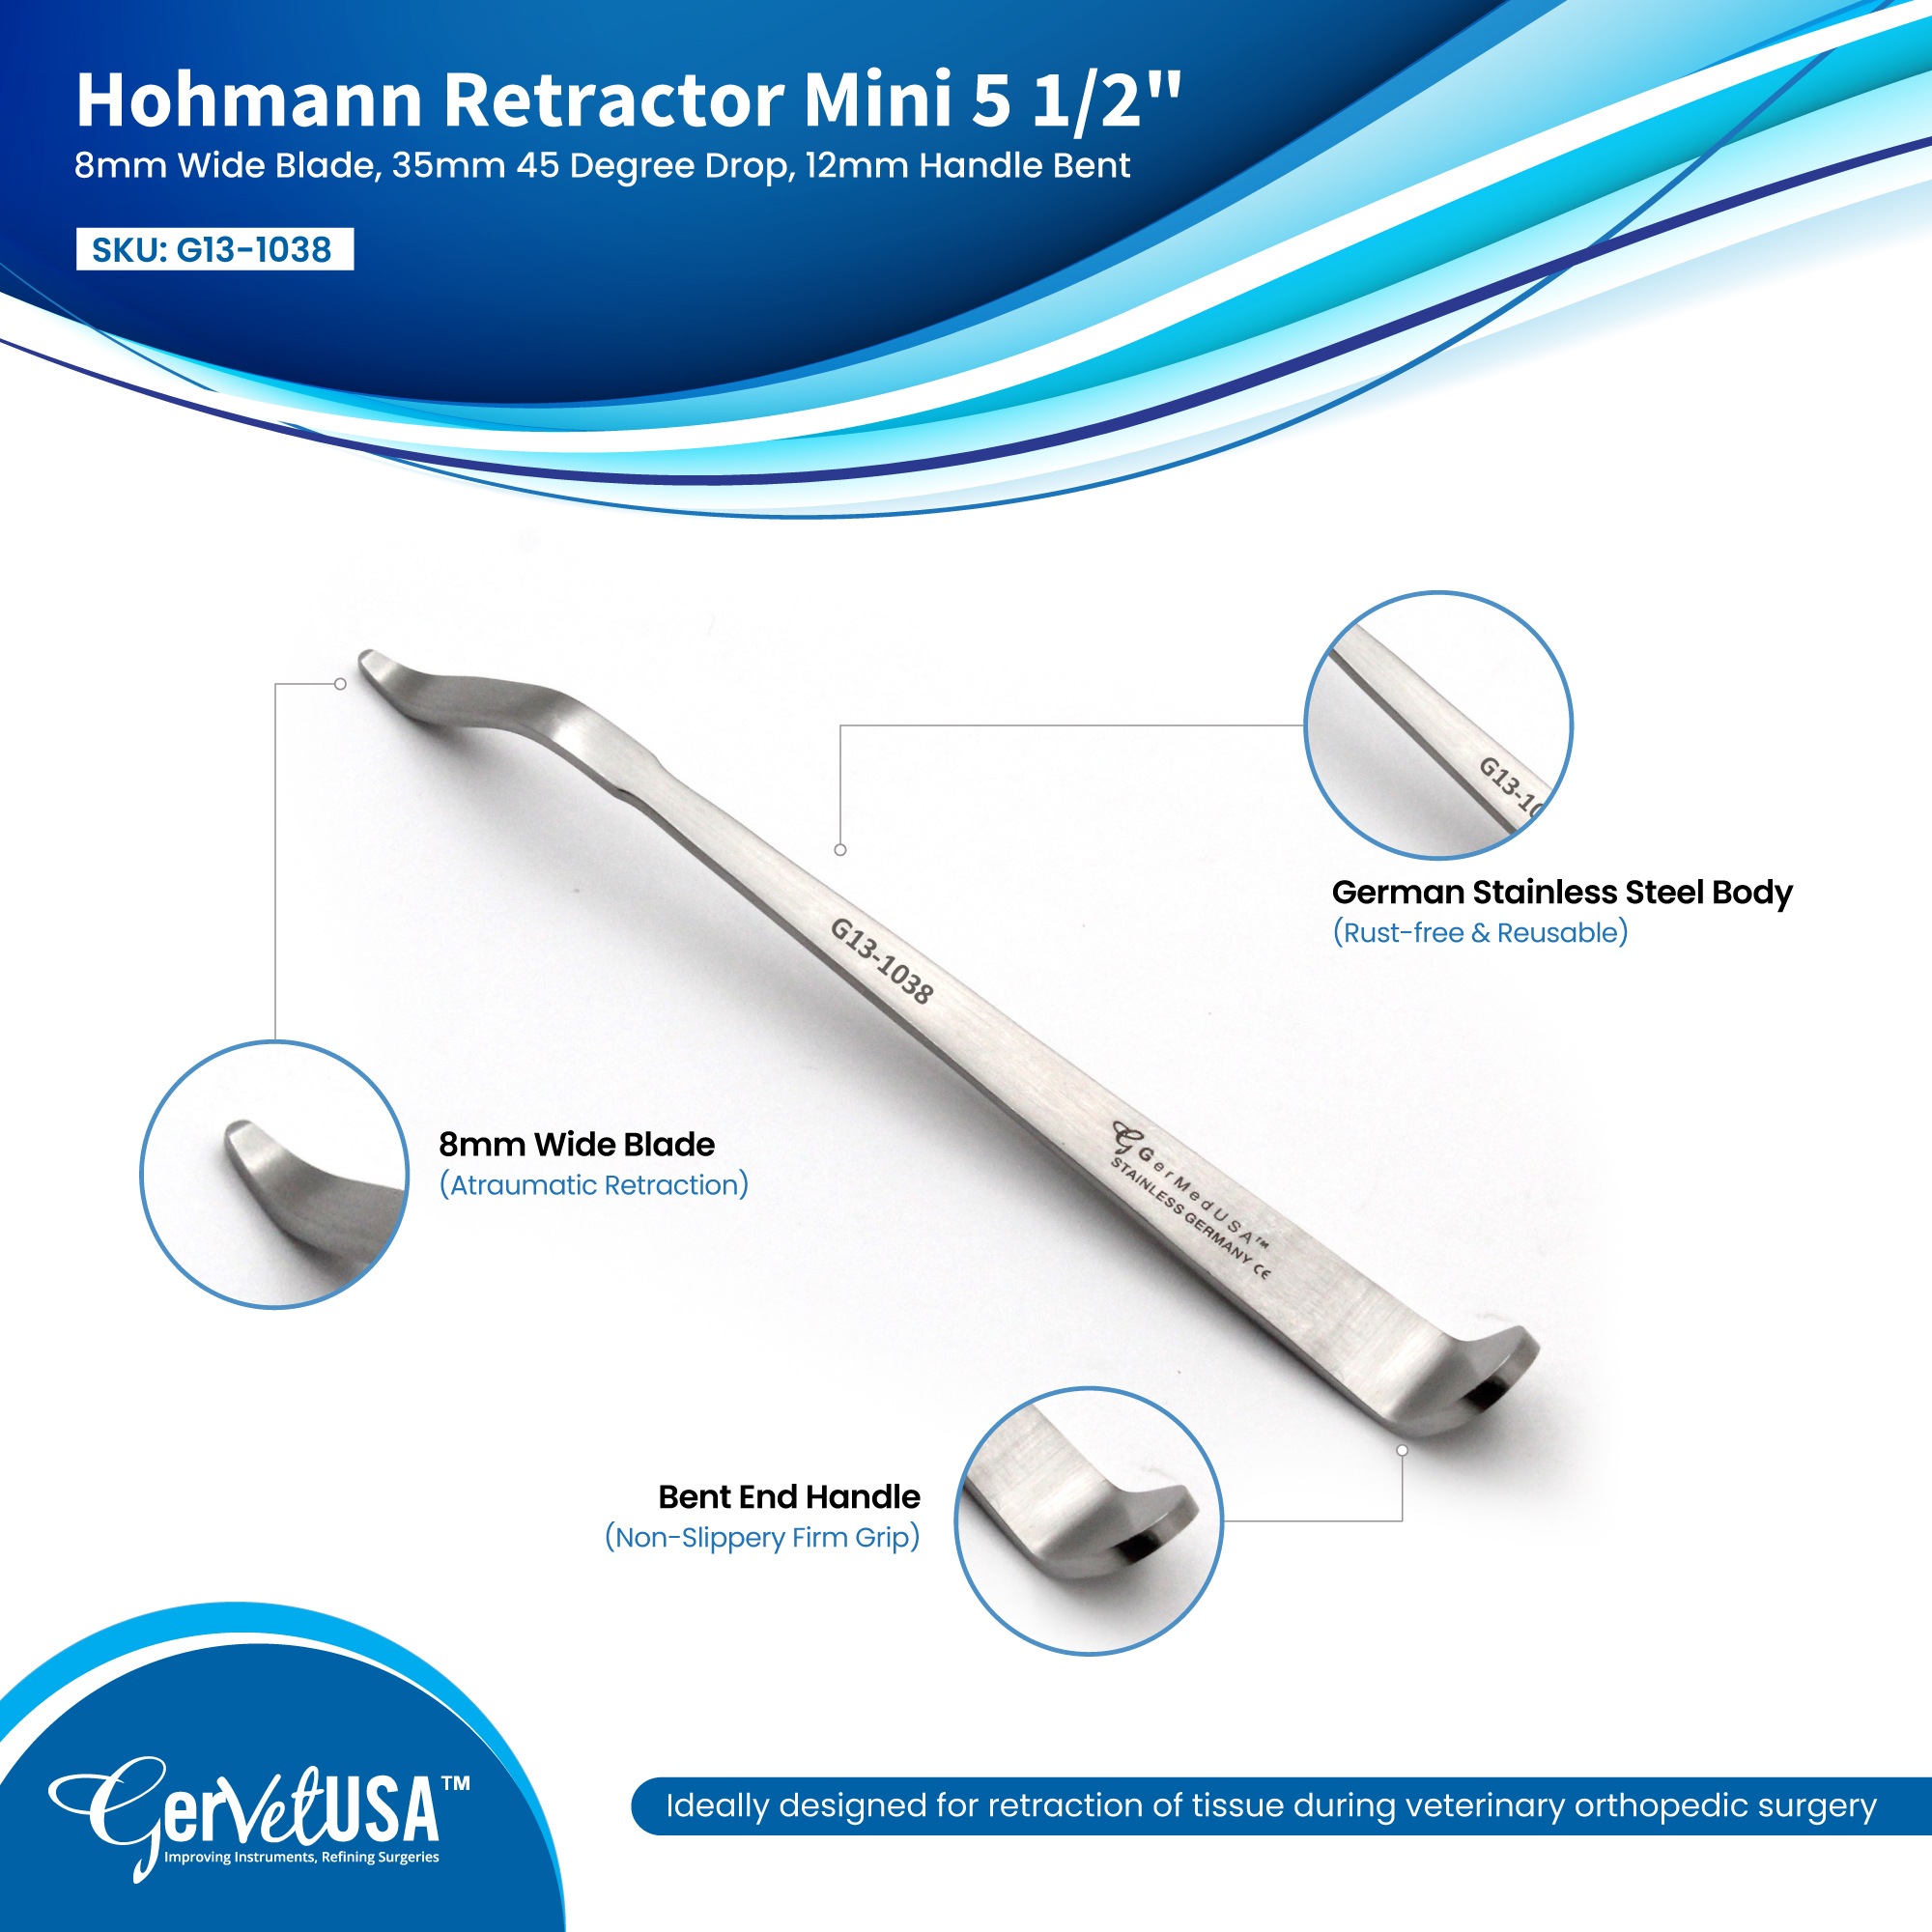 Hohmann Retractor Mini 5 1/2", 8mm Wide Blade, 35mm 45 Degree Drop, 12mm Handle Bent